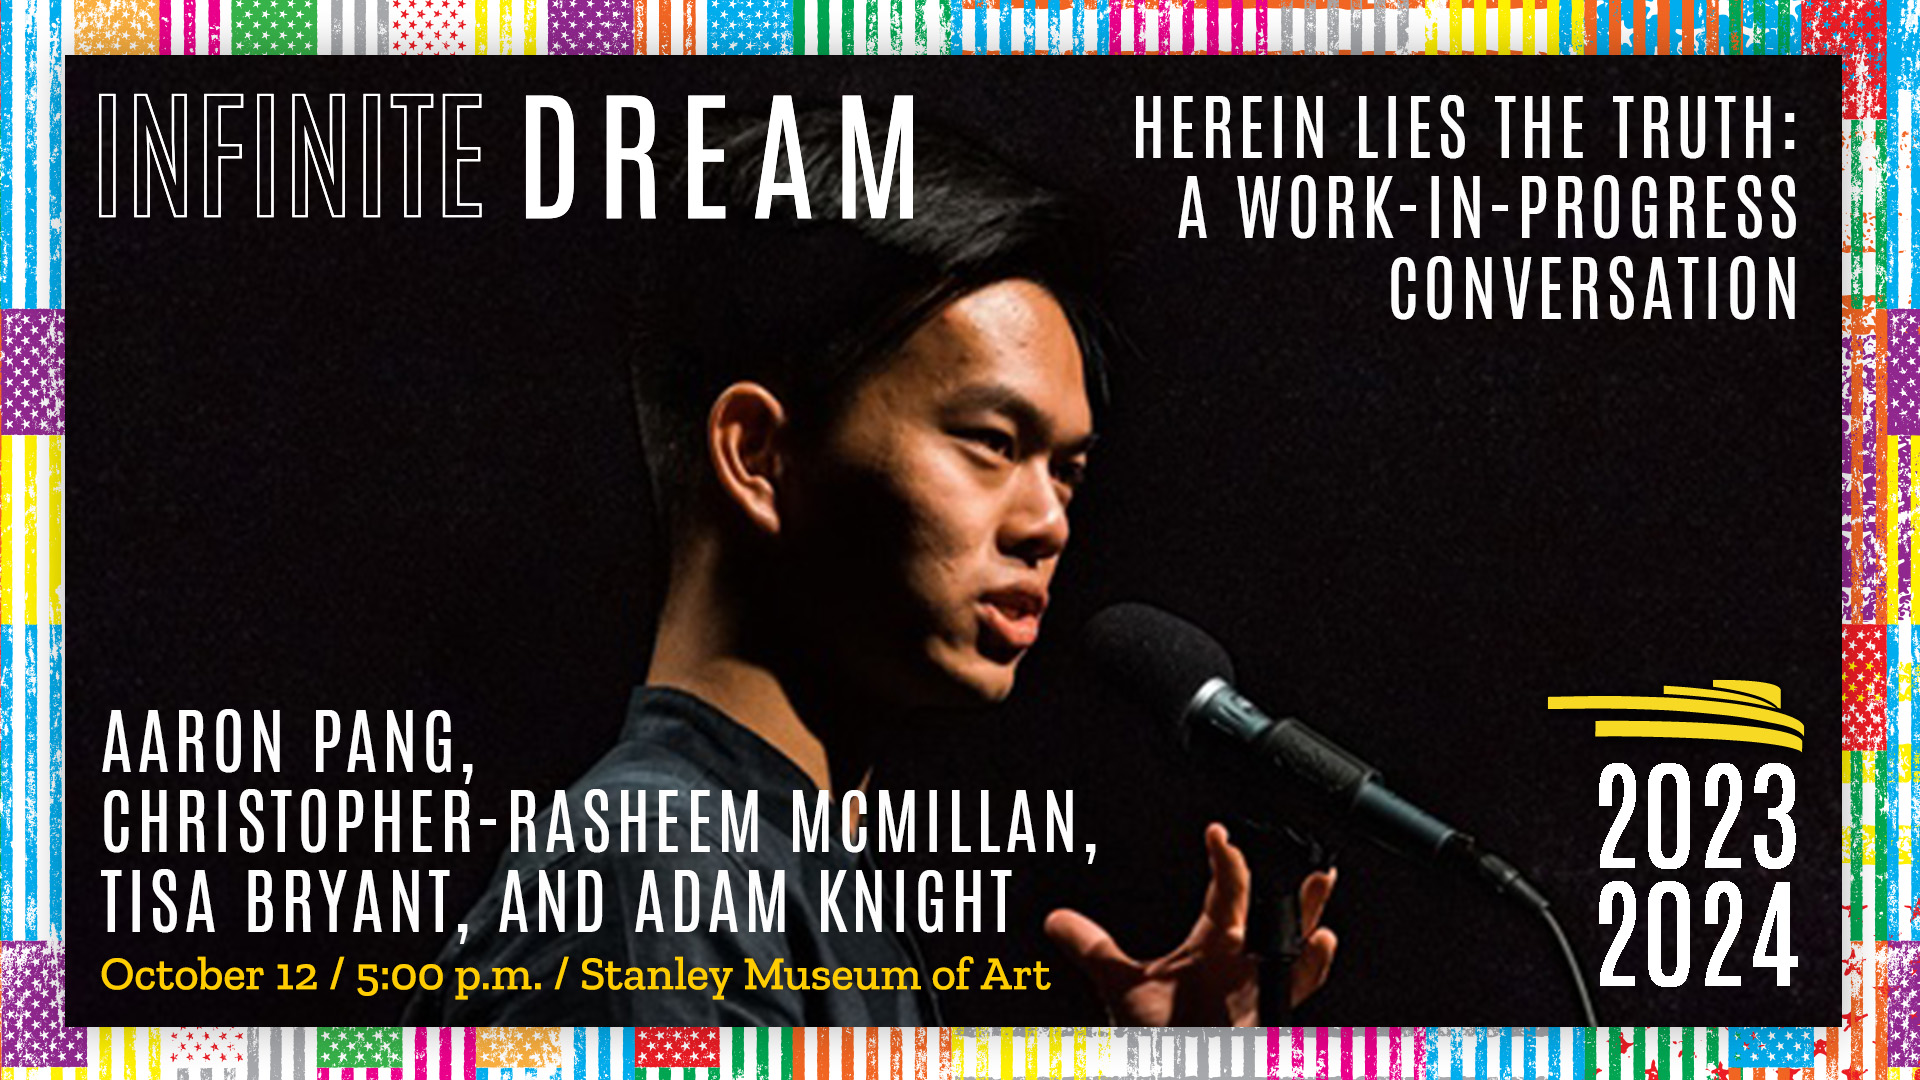 Aaron Pang infinite dream Oct 12